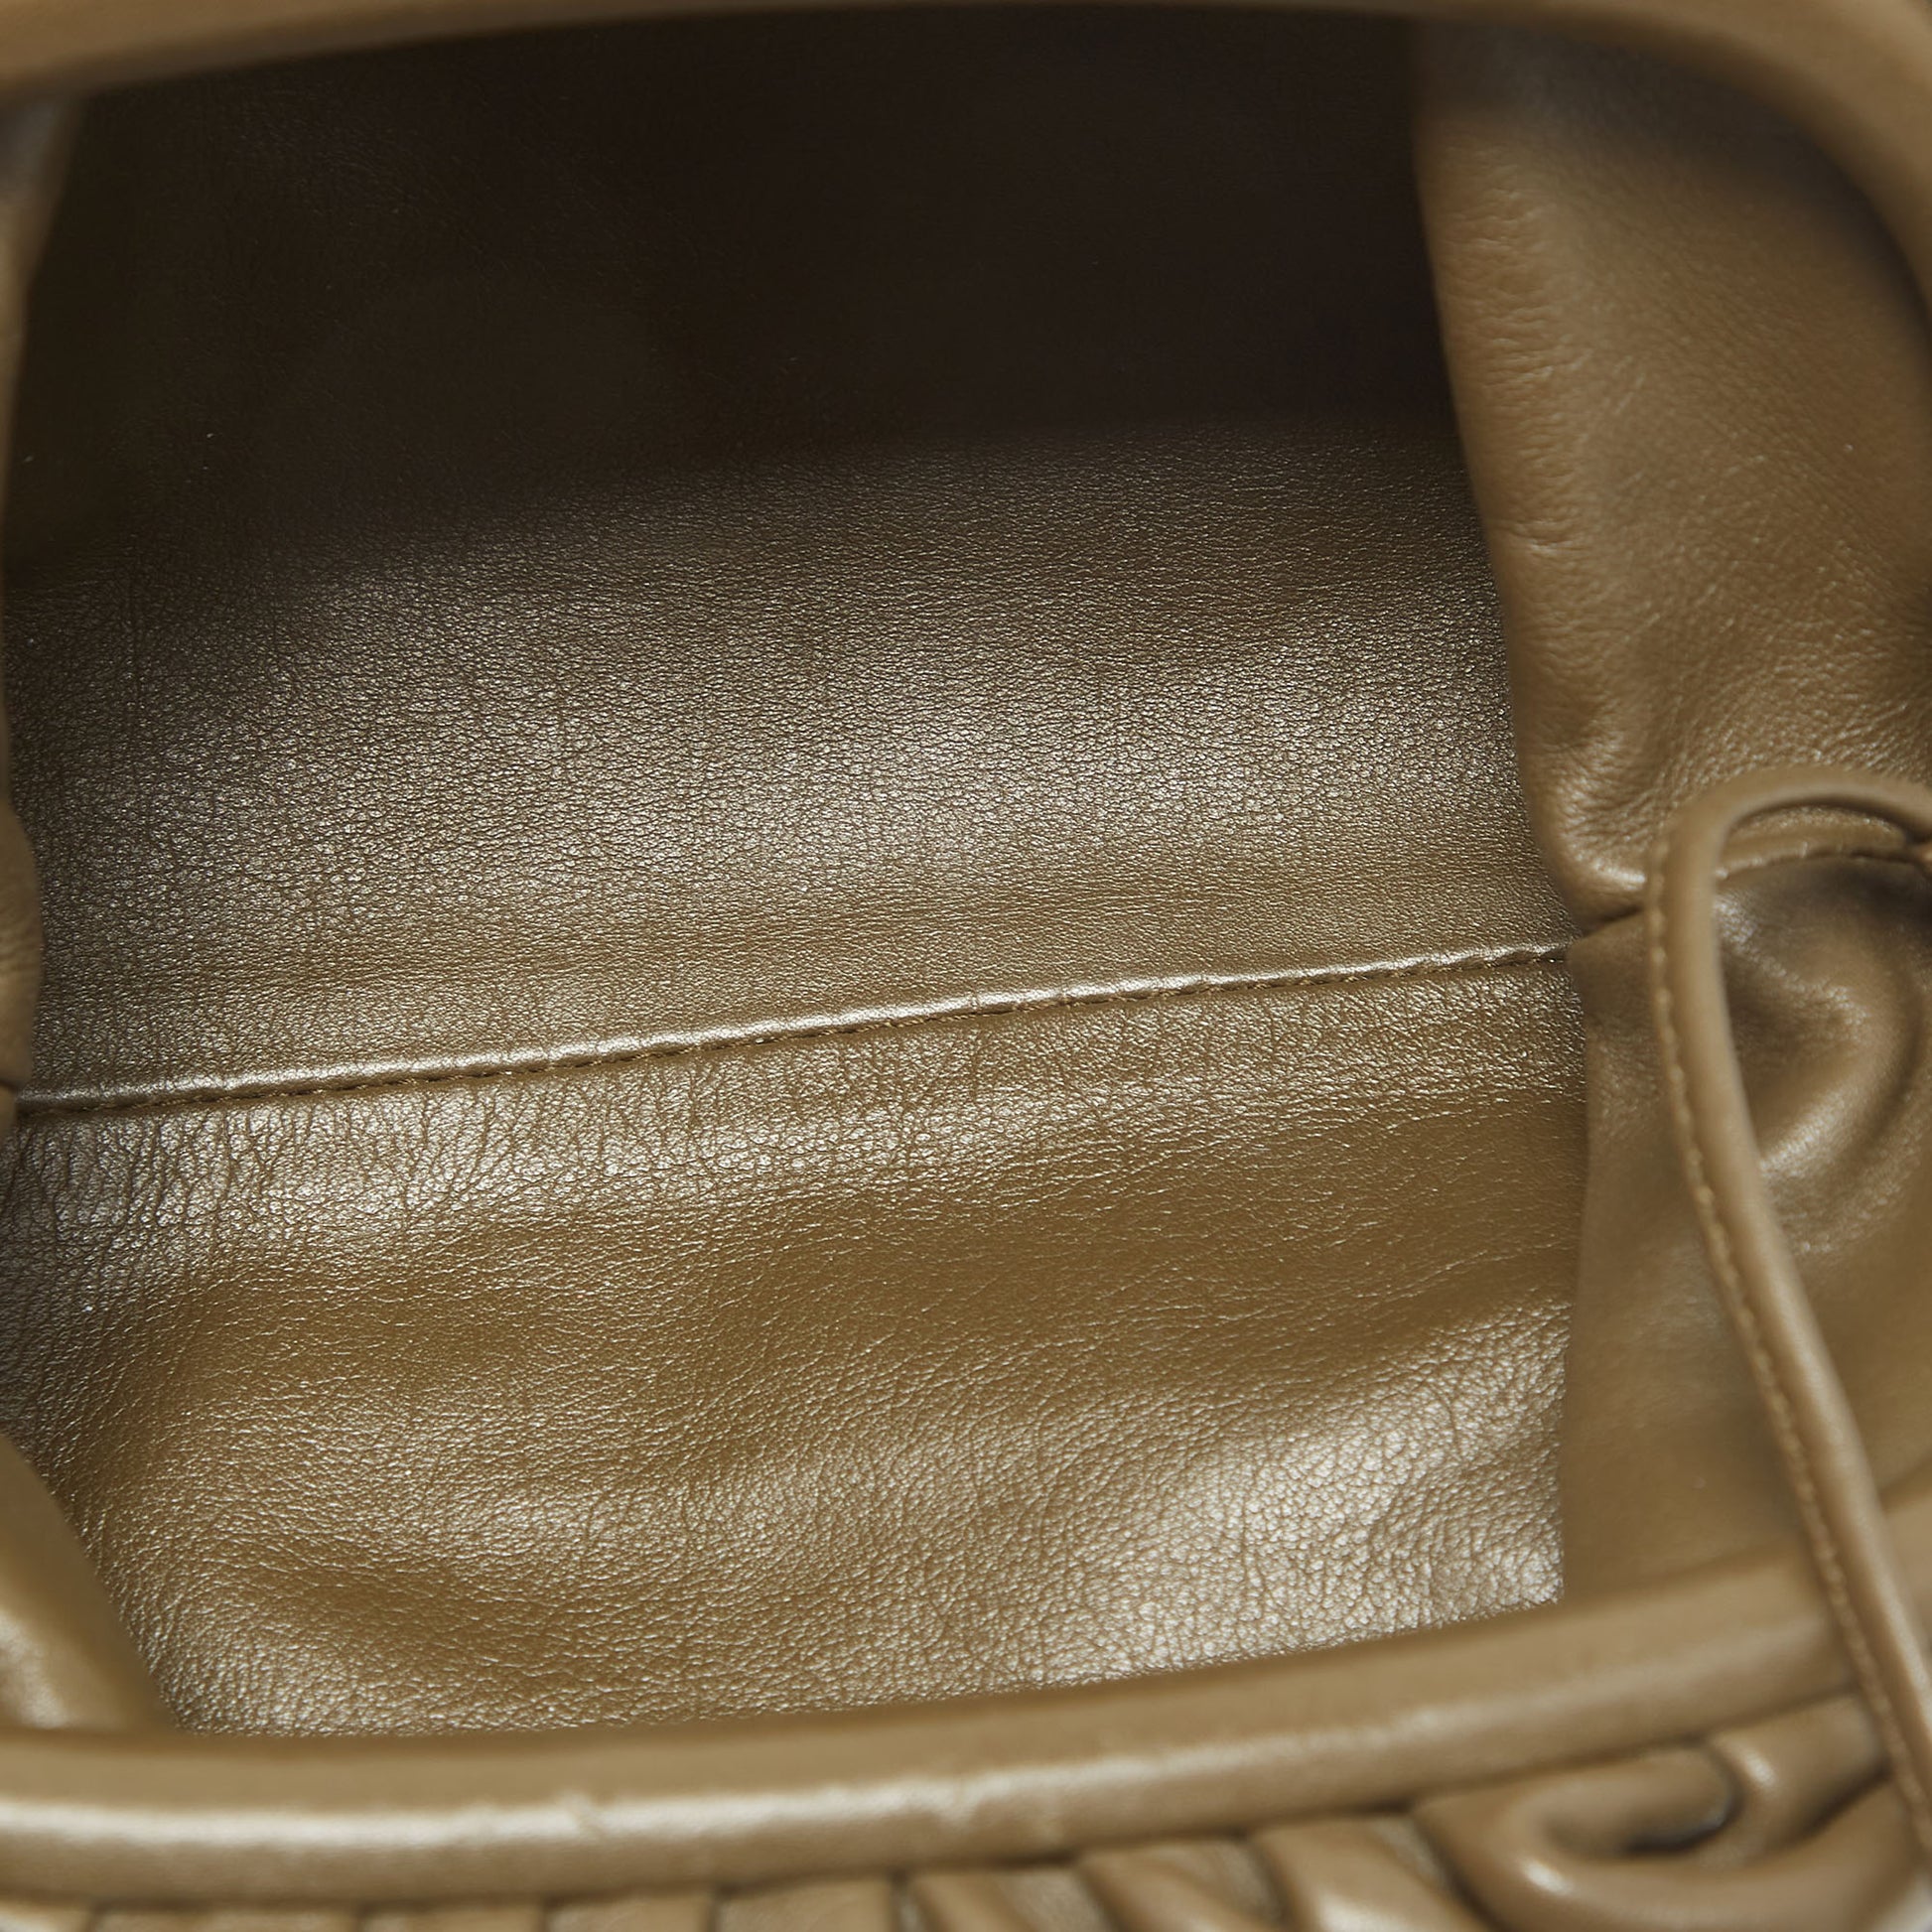 Bottega Veneta The Mini Pouch Bag in Green Leather Intrecciato — UFO No More